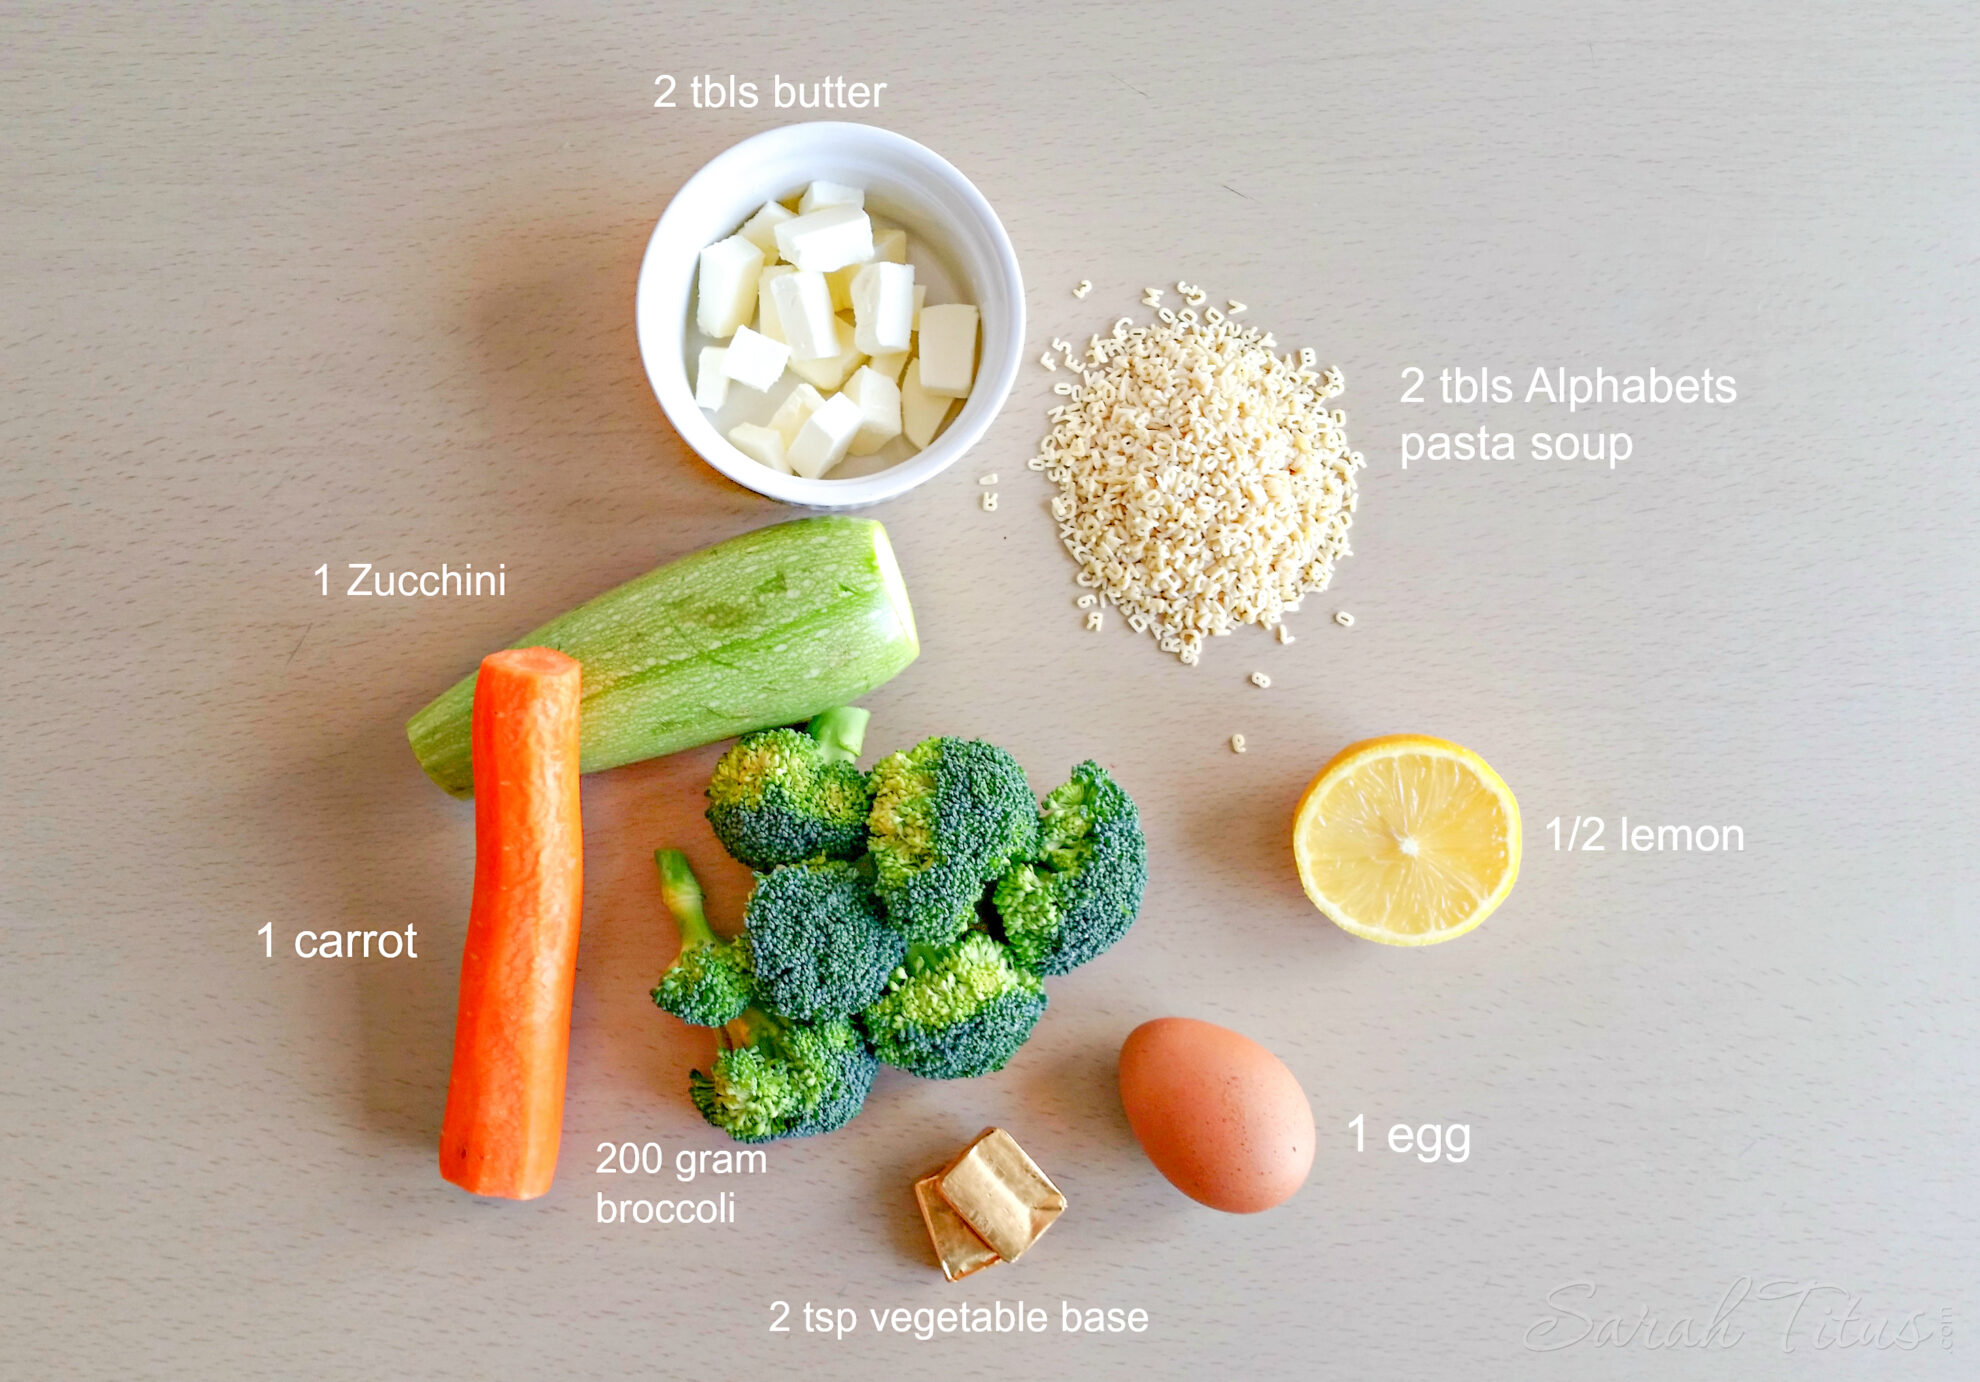 Greek Avgolemono Vegetable Soup ingredients: butter, pasta, lemon, egg, vegetable base, broccoli, carrot and zucchini